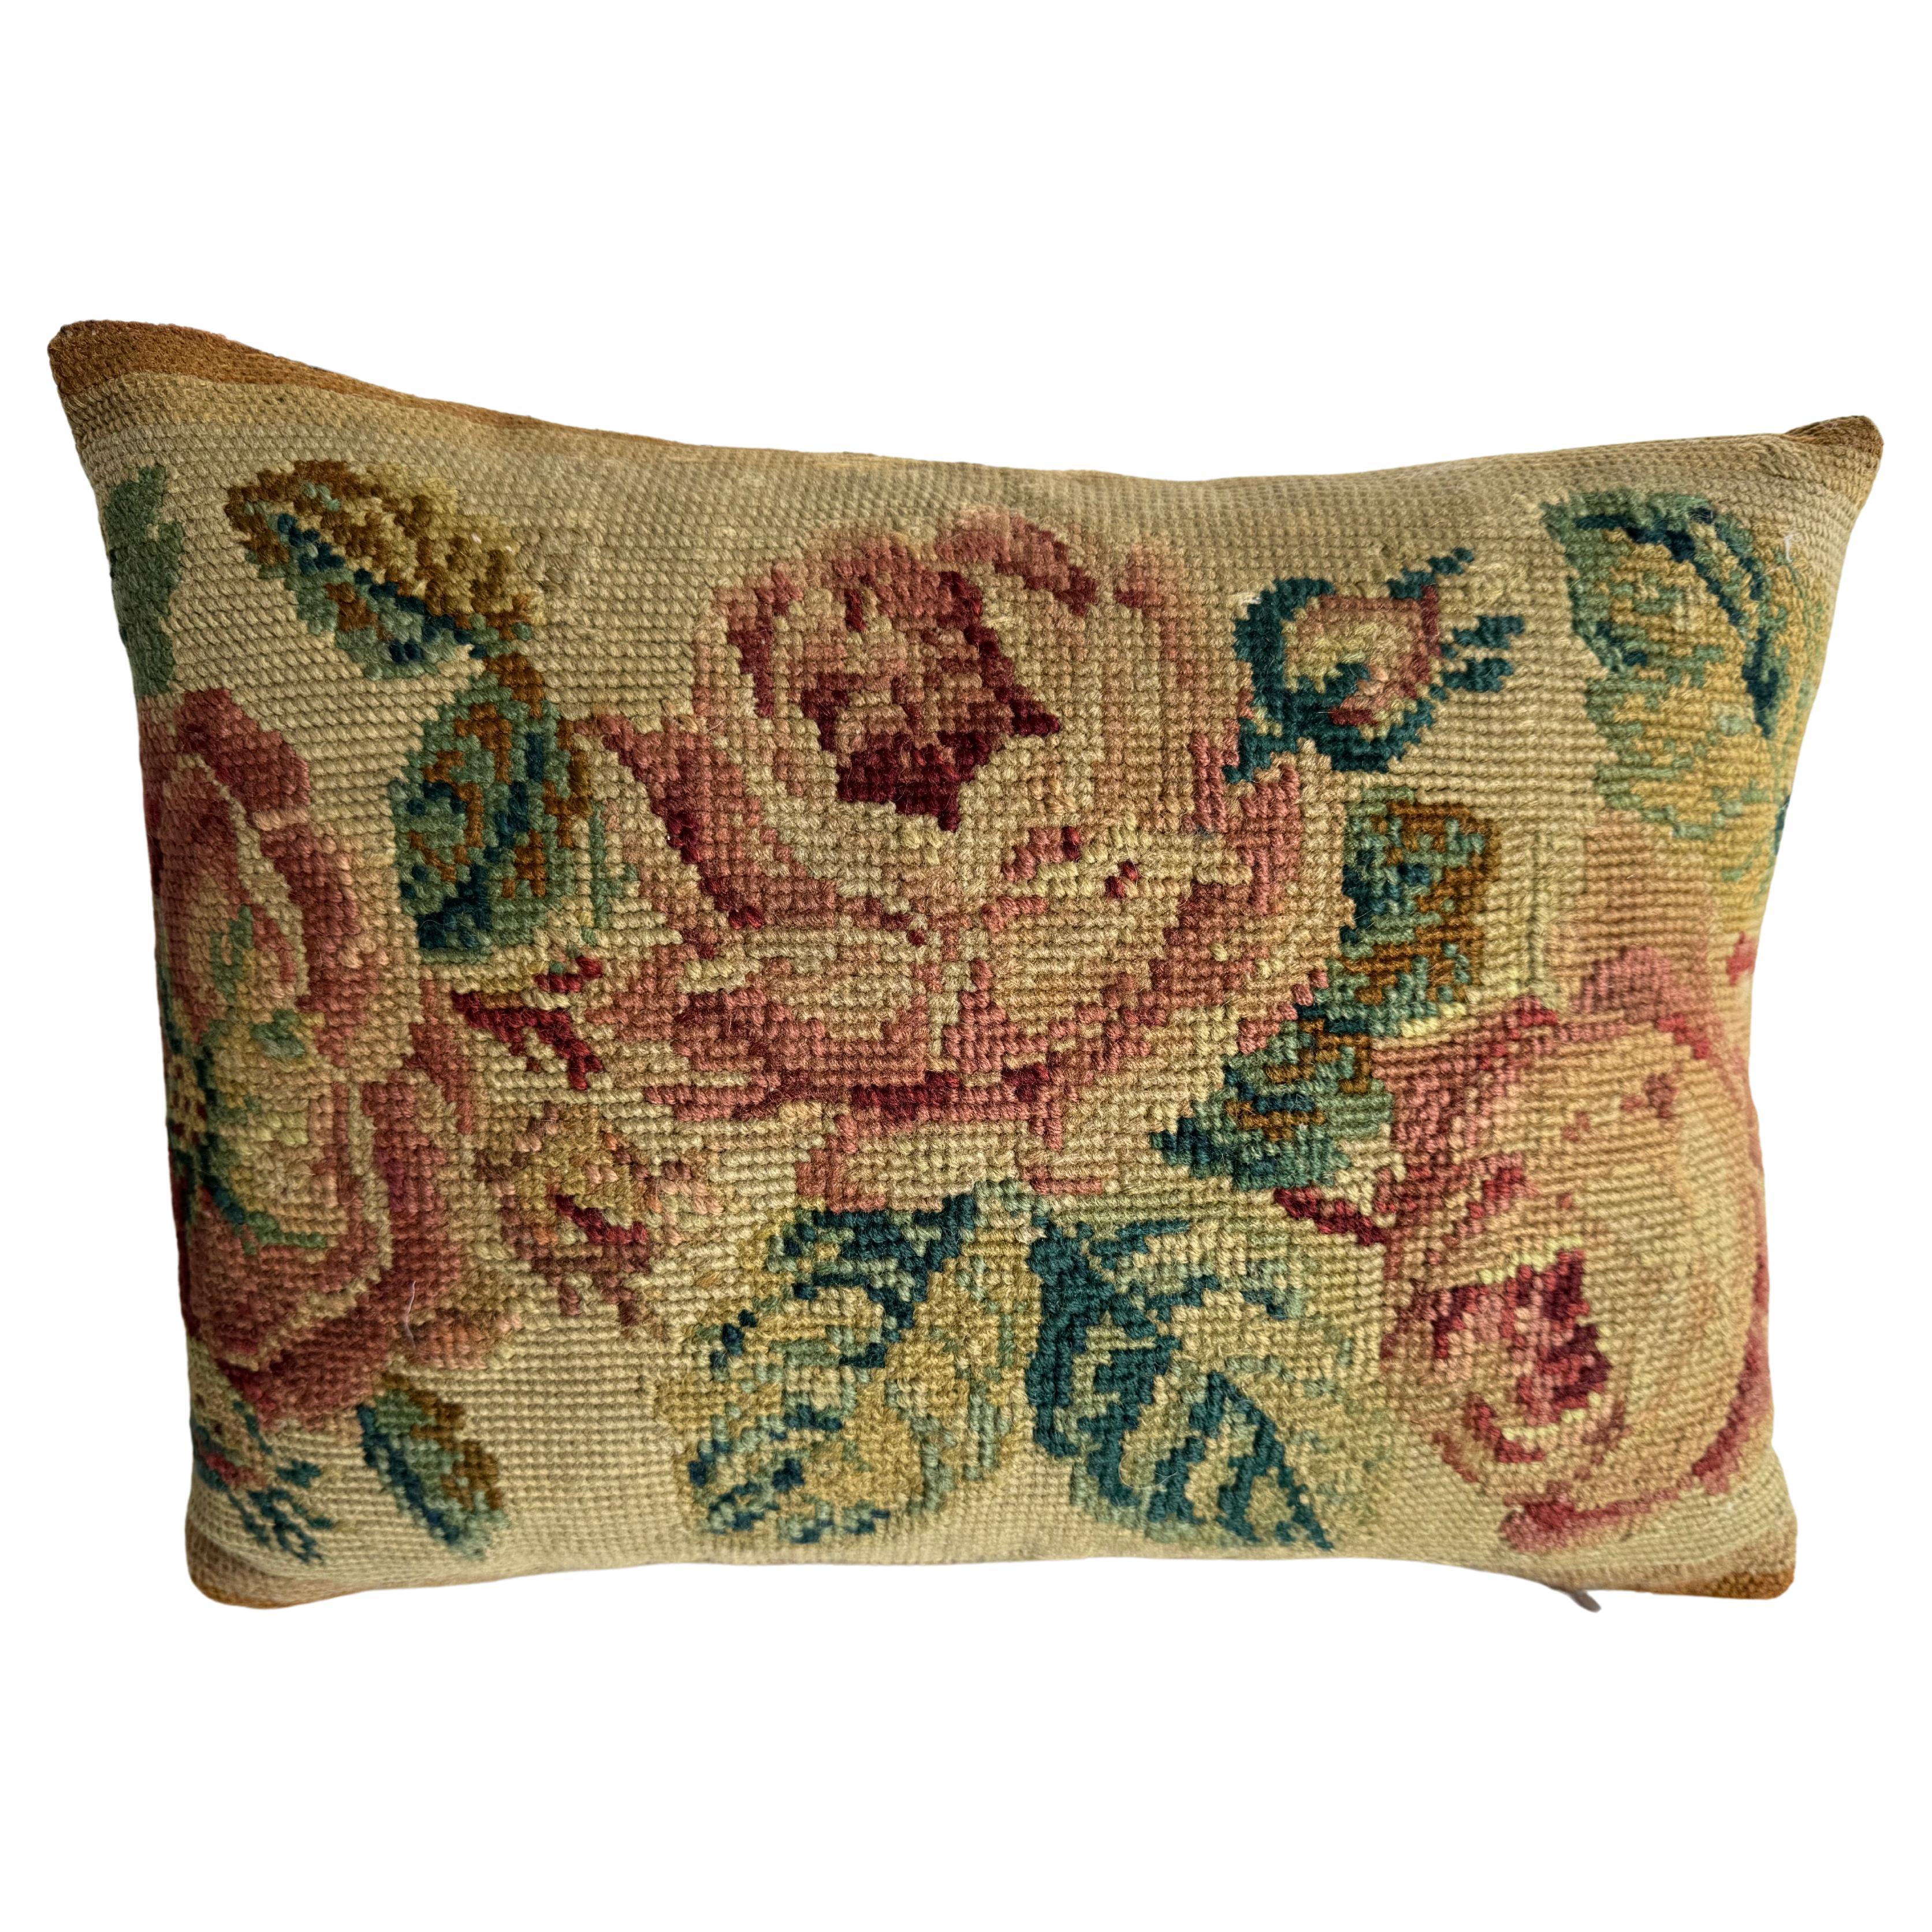 1850 English Needlework 14" x 10" Pillow